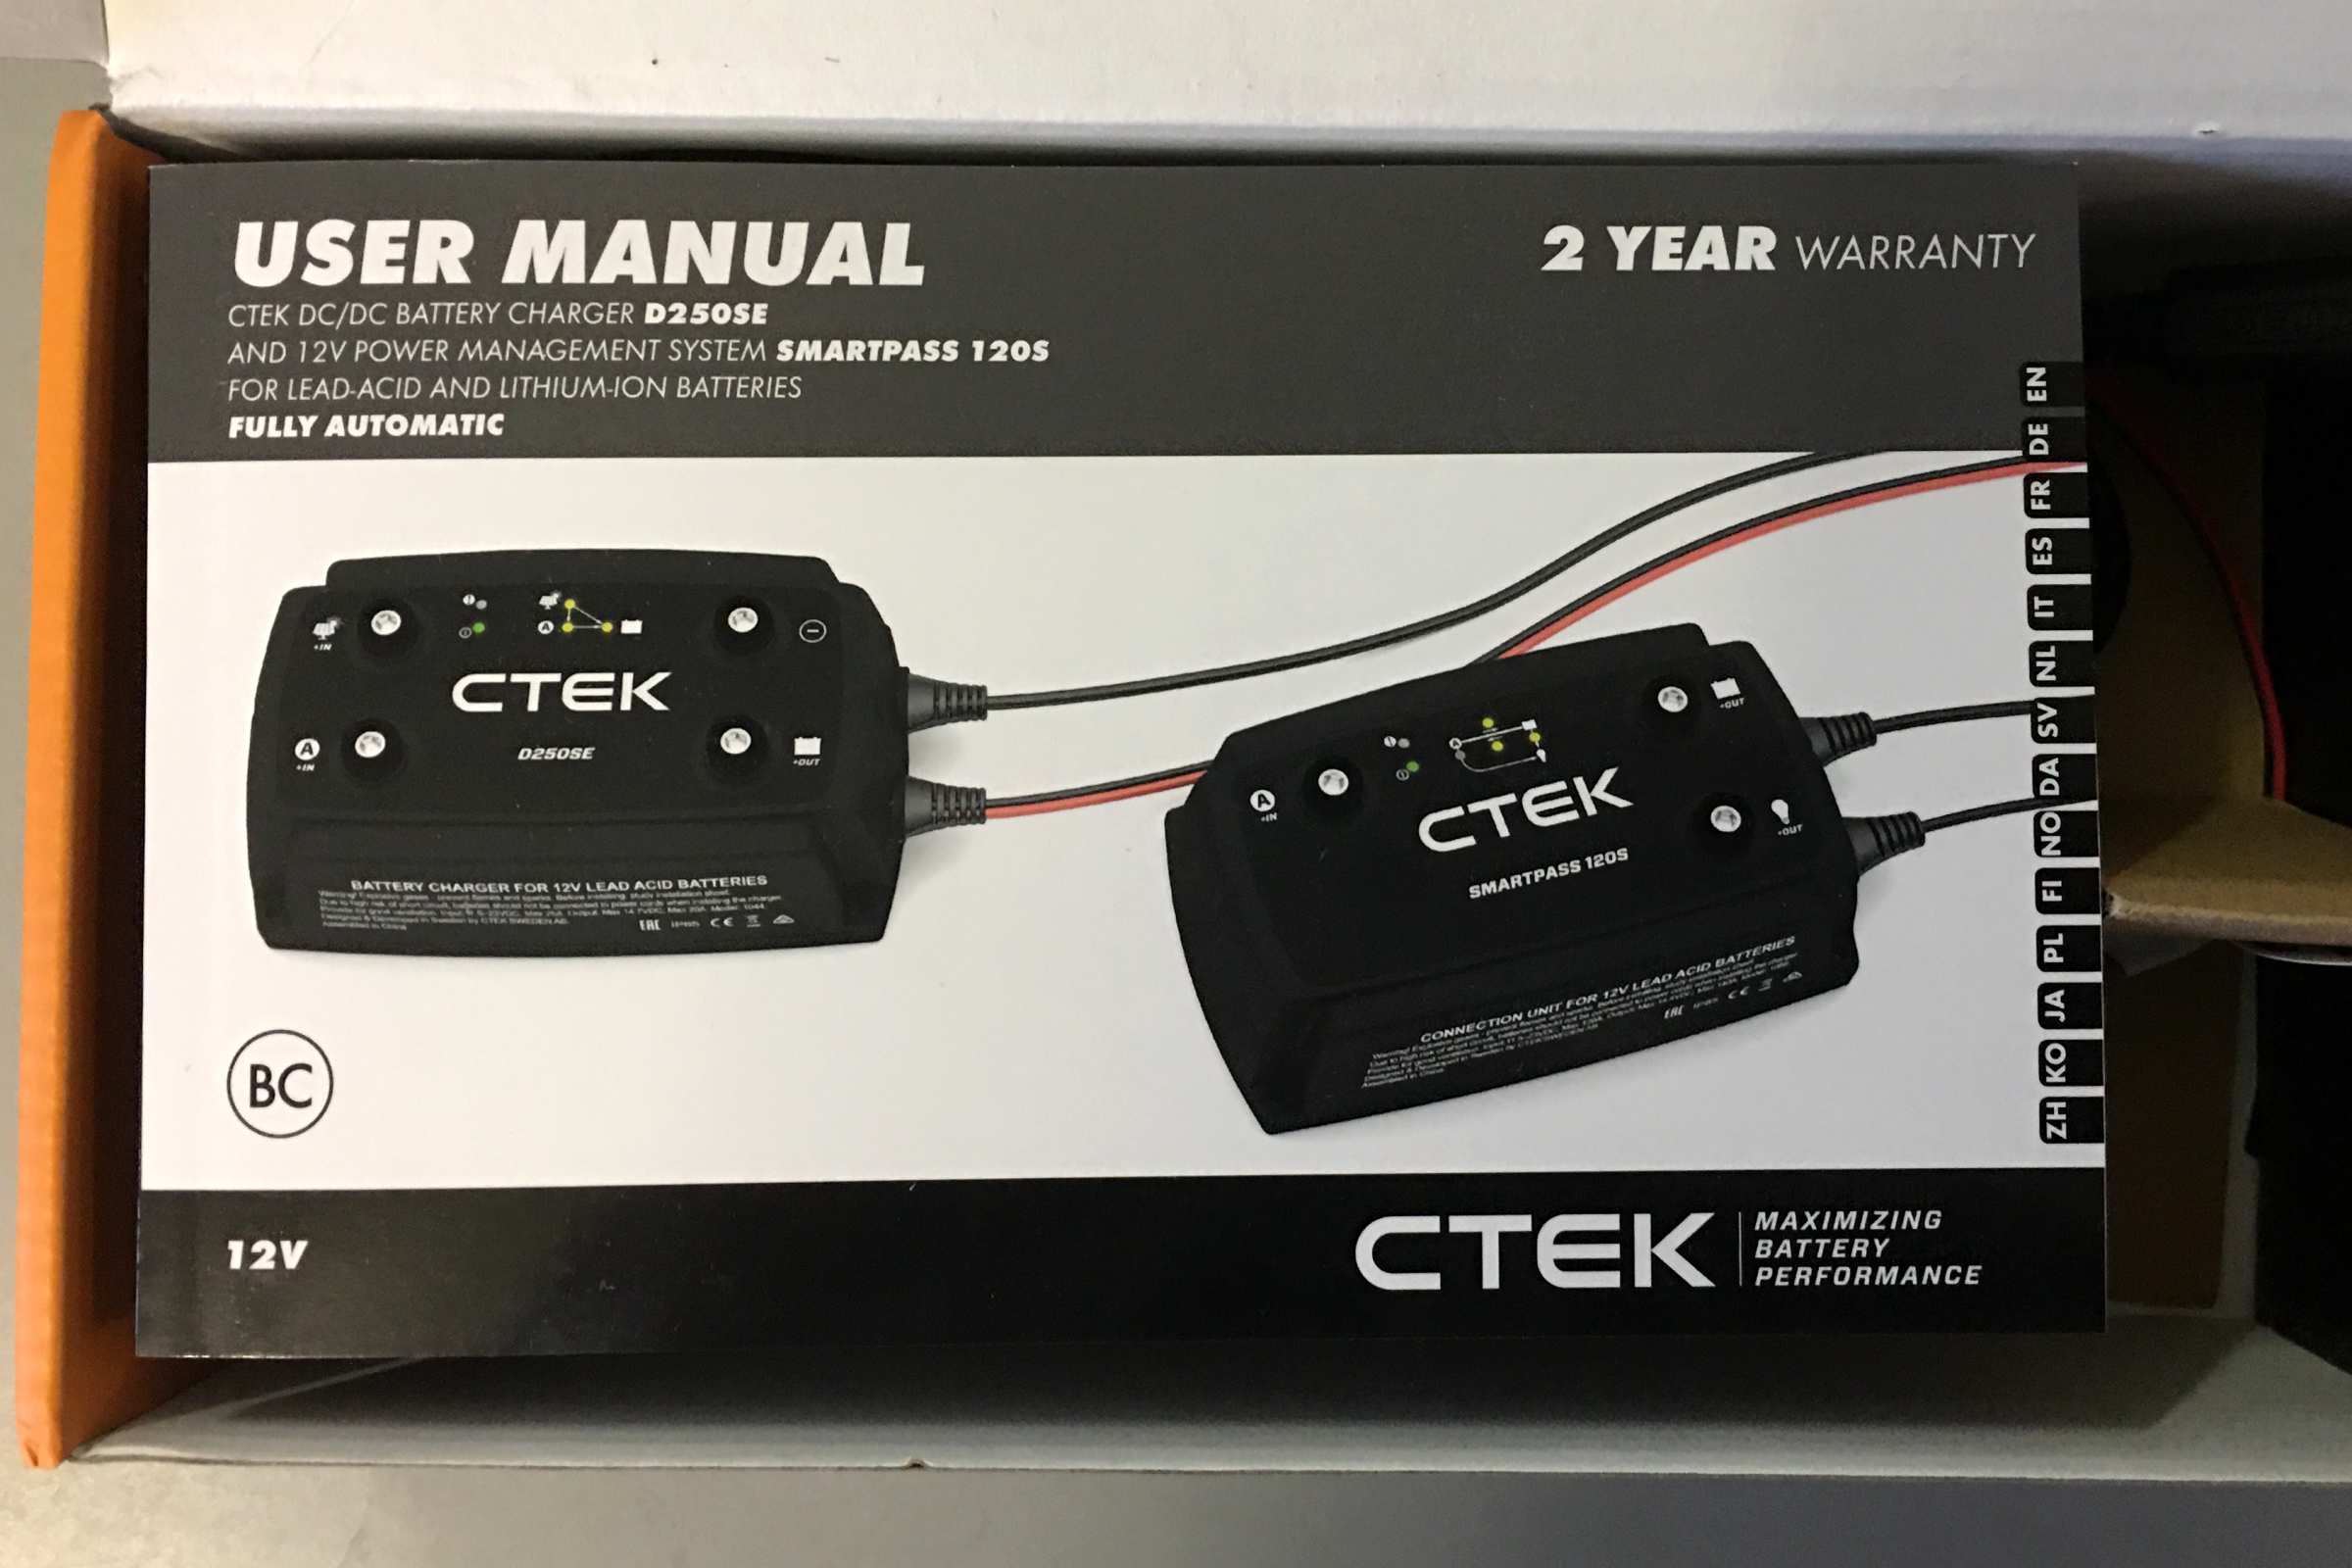 CTEK D25OSE user manual